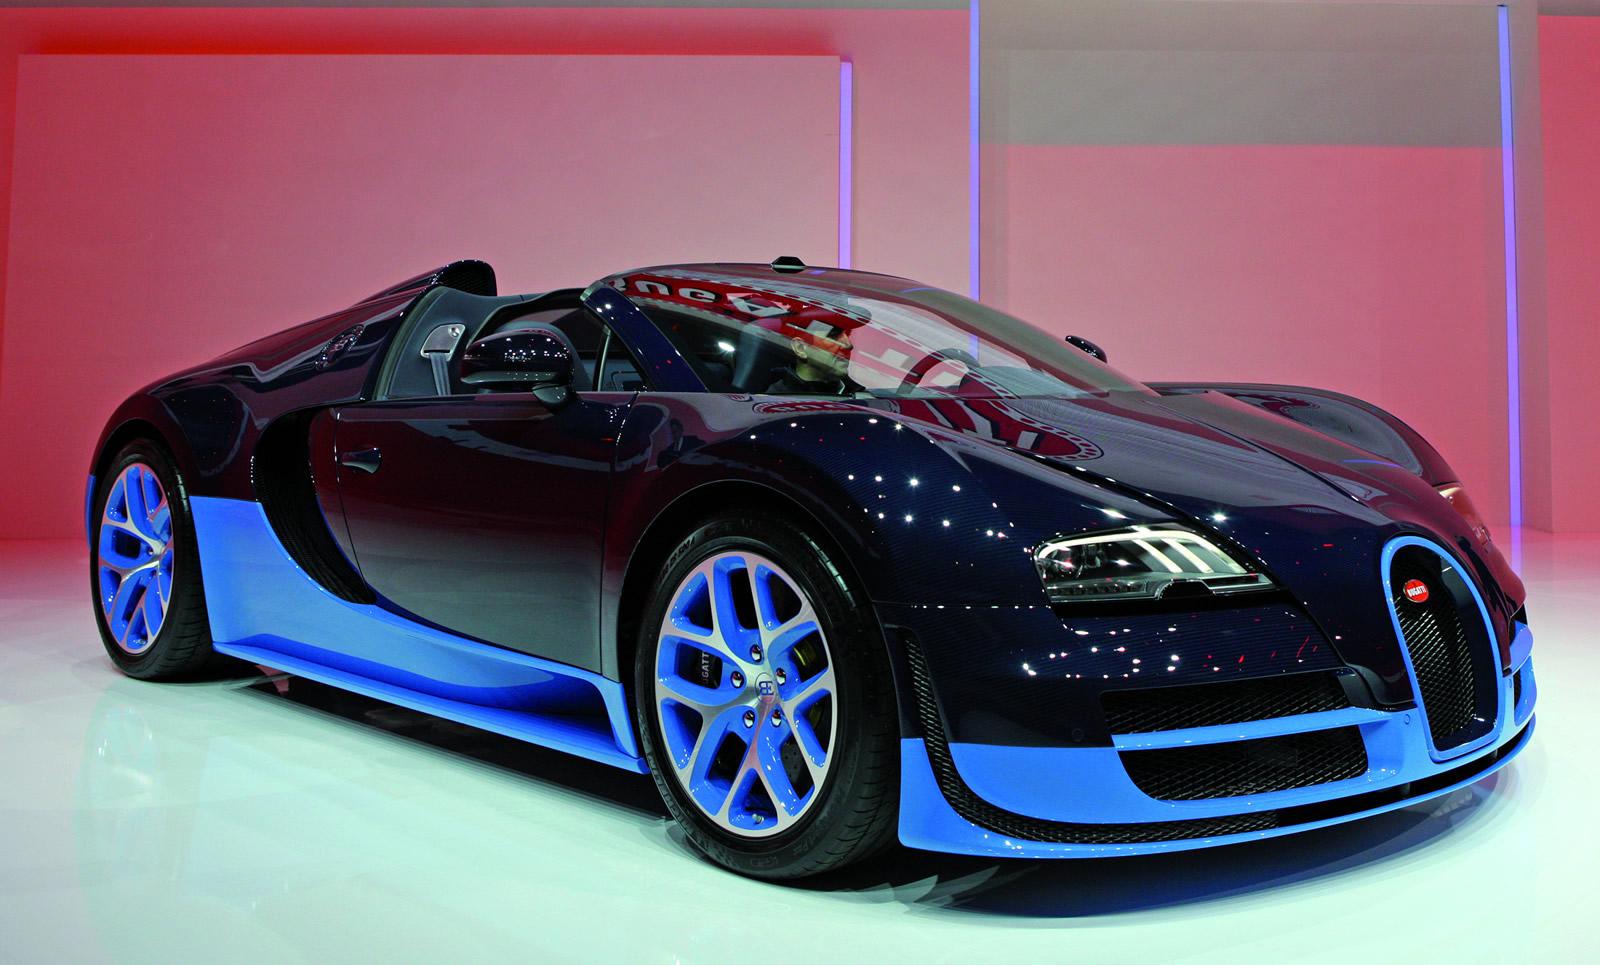 Wallpaper Mobil Bugatti Veyron